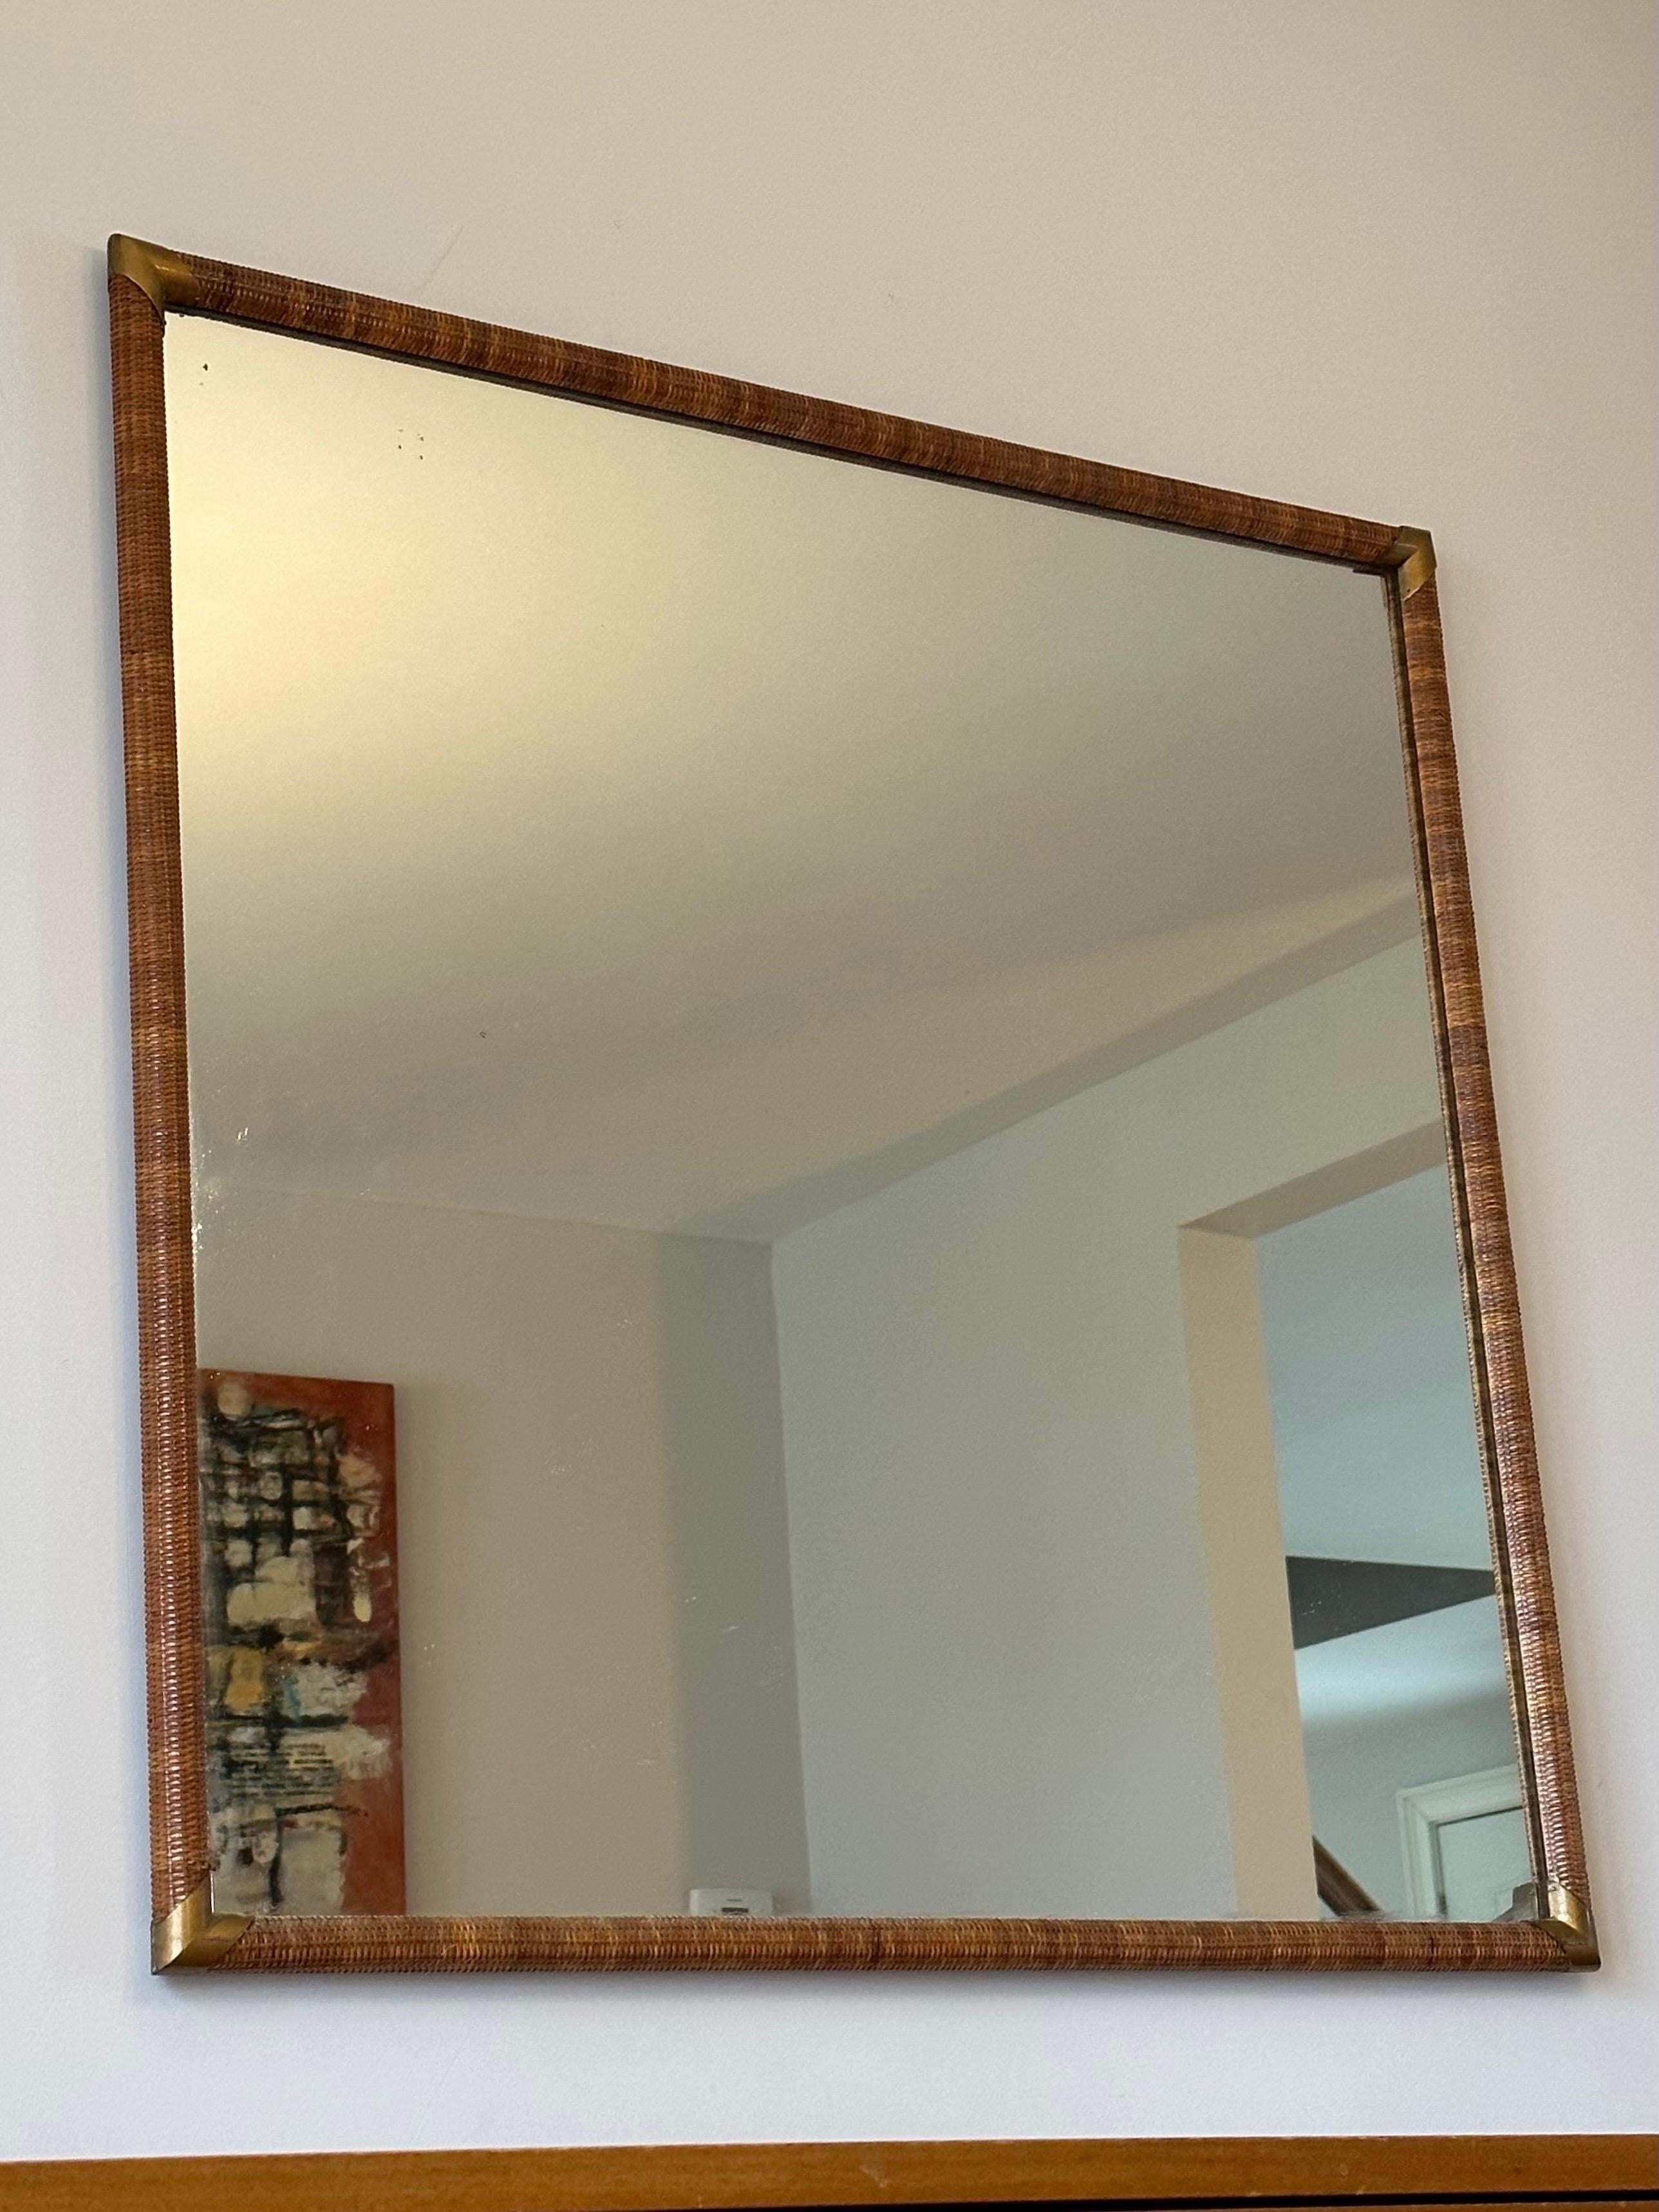 Ein großer Wandspiegel, entworfen von T.H Robsjohn-Gibbings für Widdicomb. Der Spiegel ist mit Schilfrohr umwickelt und hat Ecken aus Messing. Dieser Spiegel stammt aus einer der begehrtesten Schlafzimmerlinien von Gibbings, obwohl die Größe des